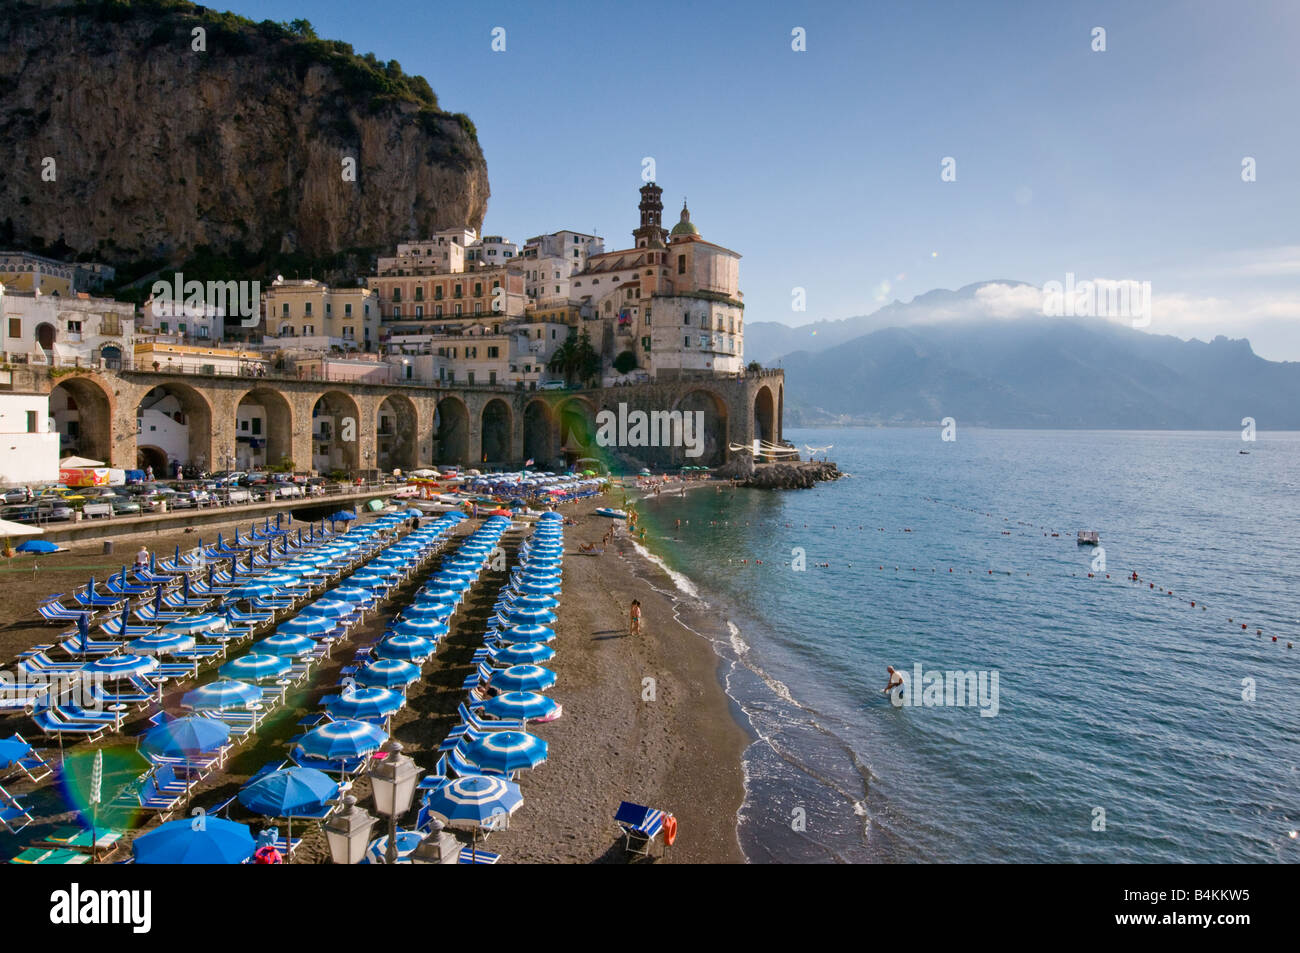 The beach at Atrani, Amalfi Coast, Italy Stock Photo